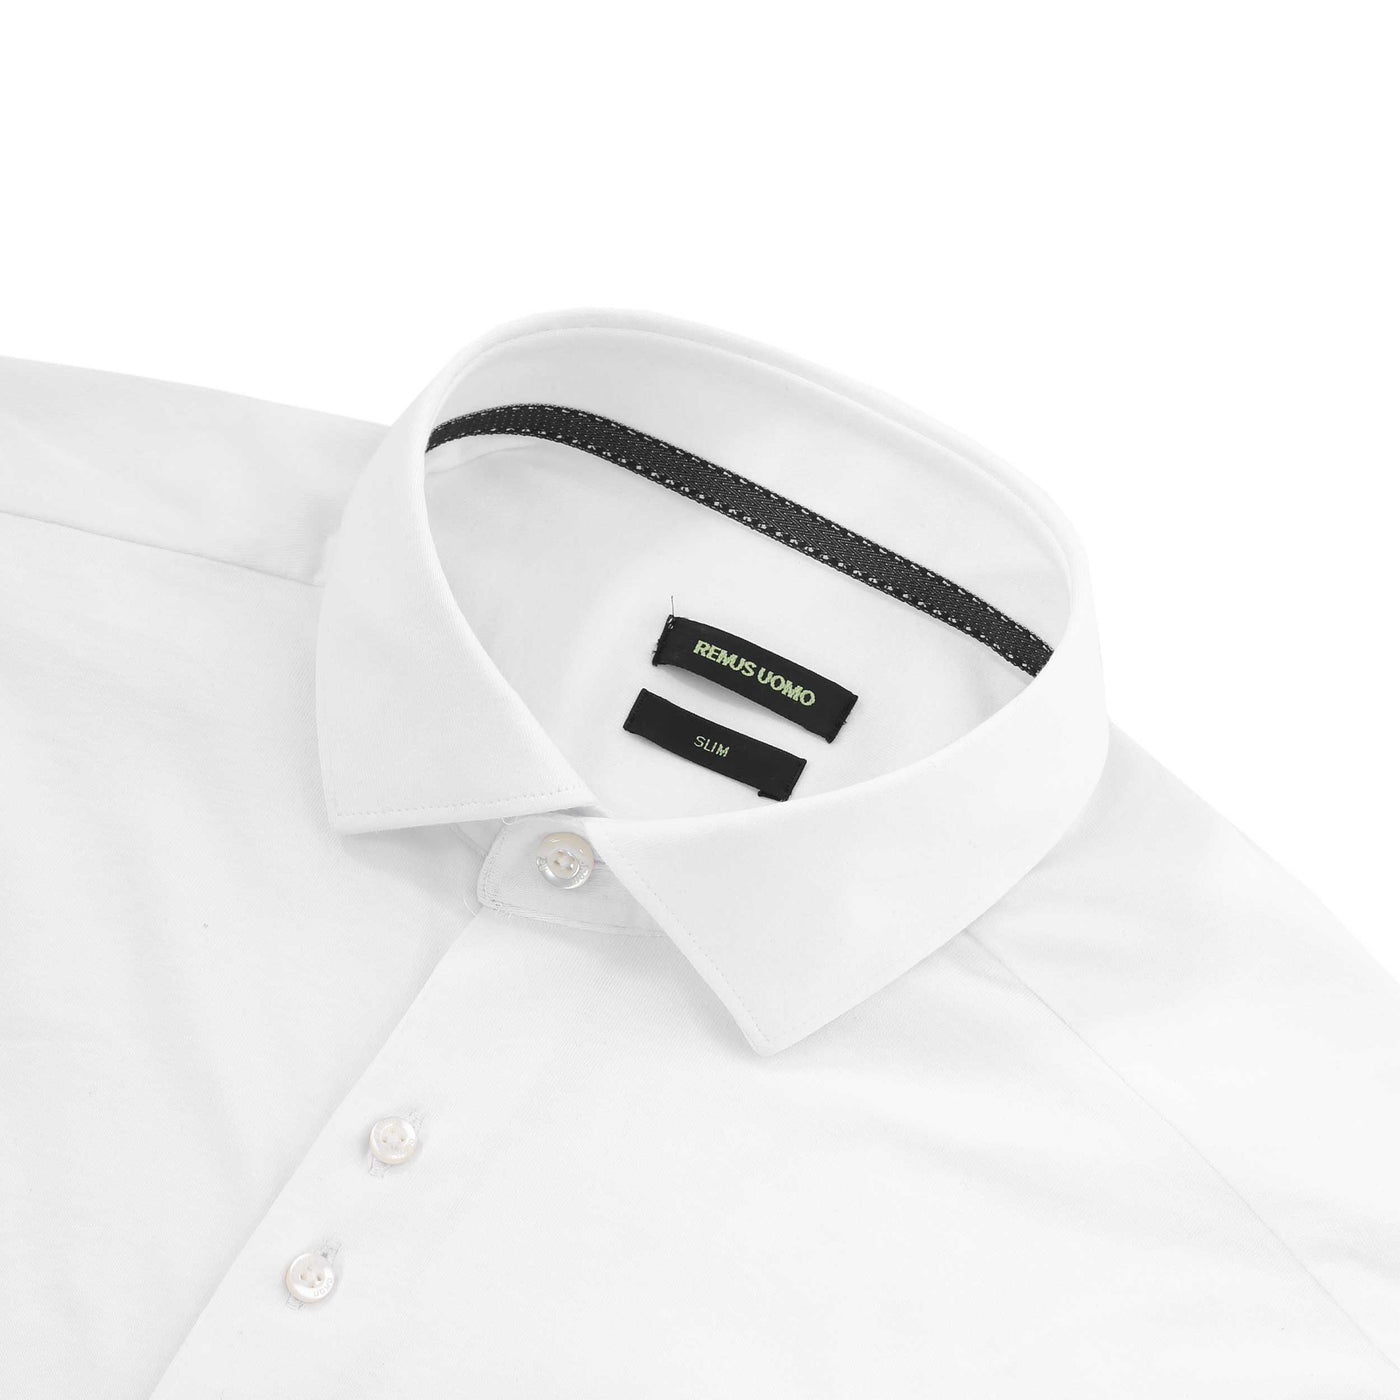 Remus Uomo Kirk Jersey Shirt in White collar